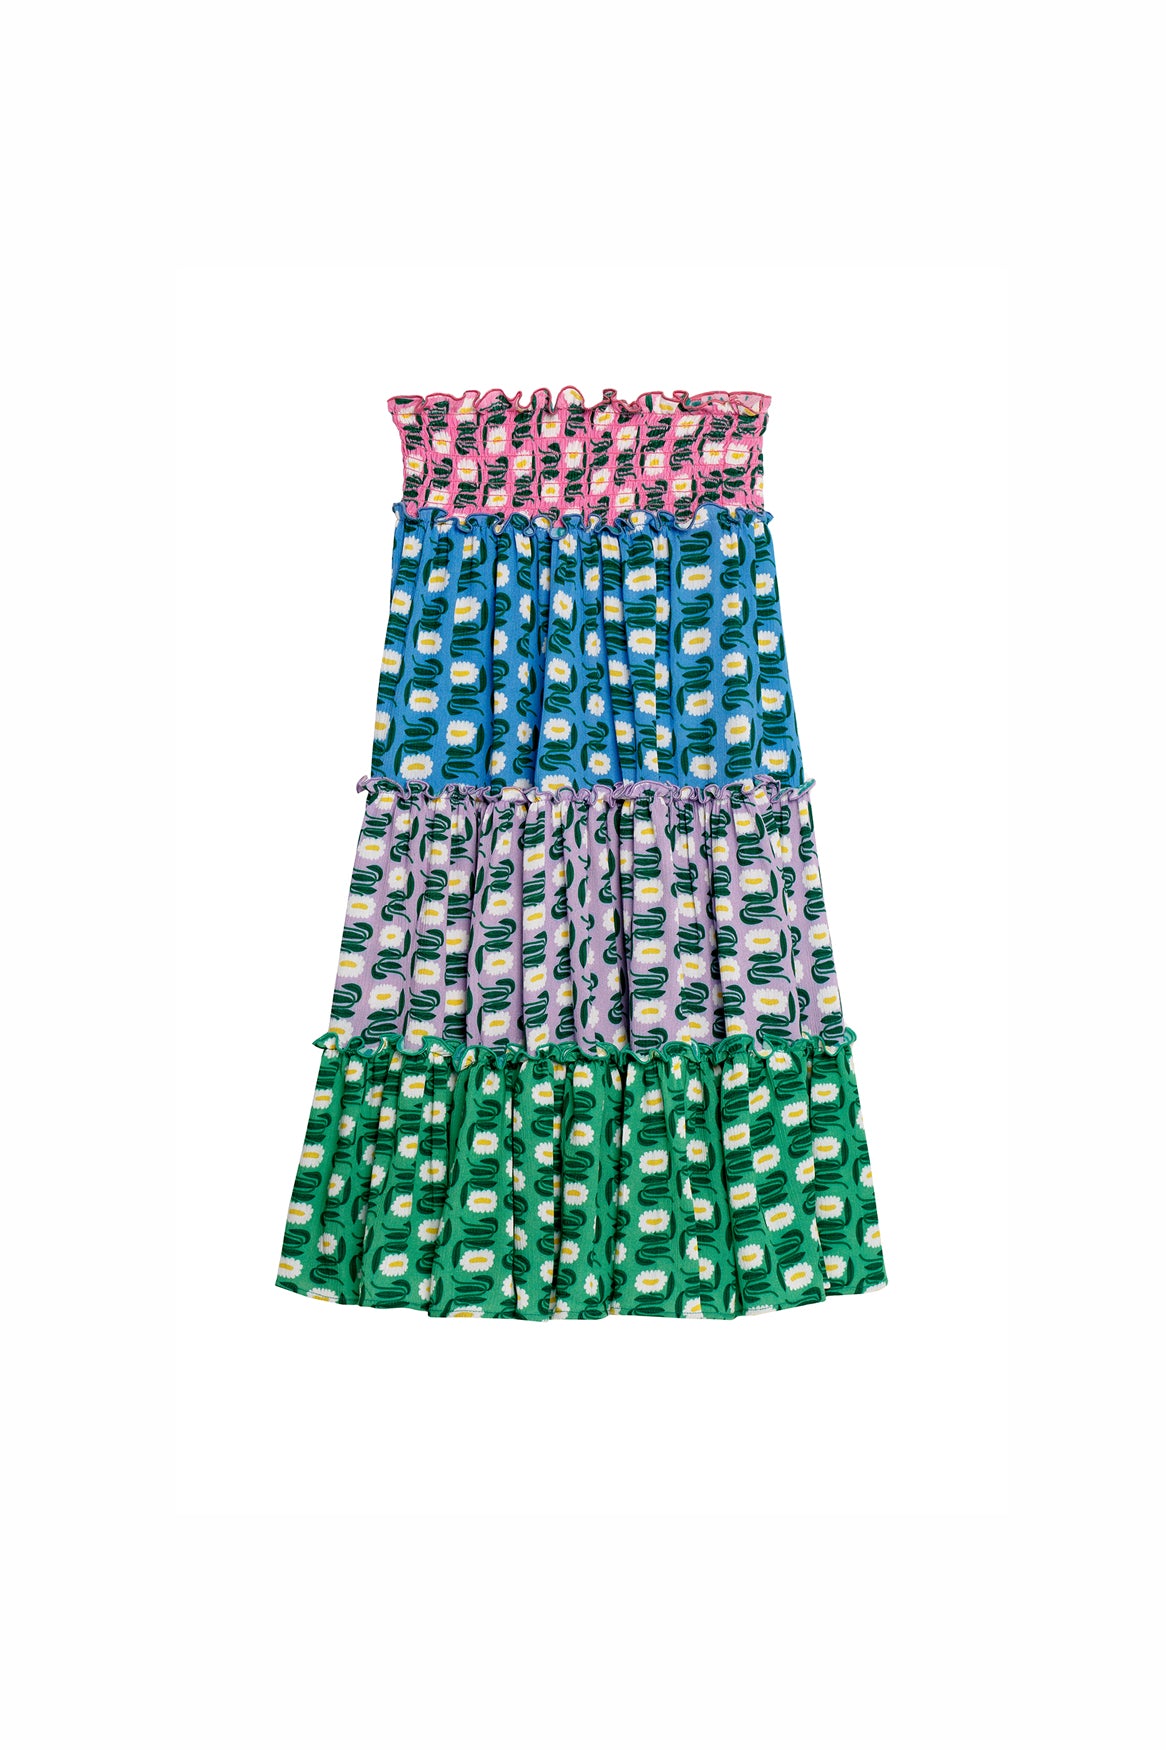 Sumba Joo Bah  10262 - Skirt